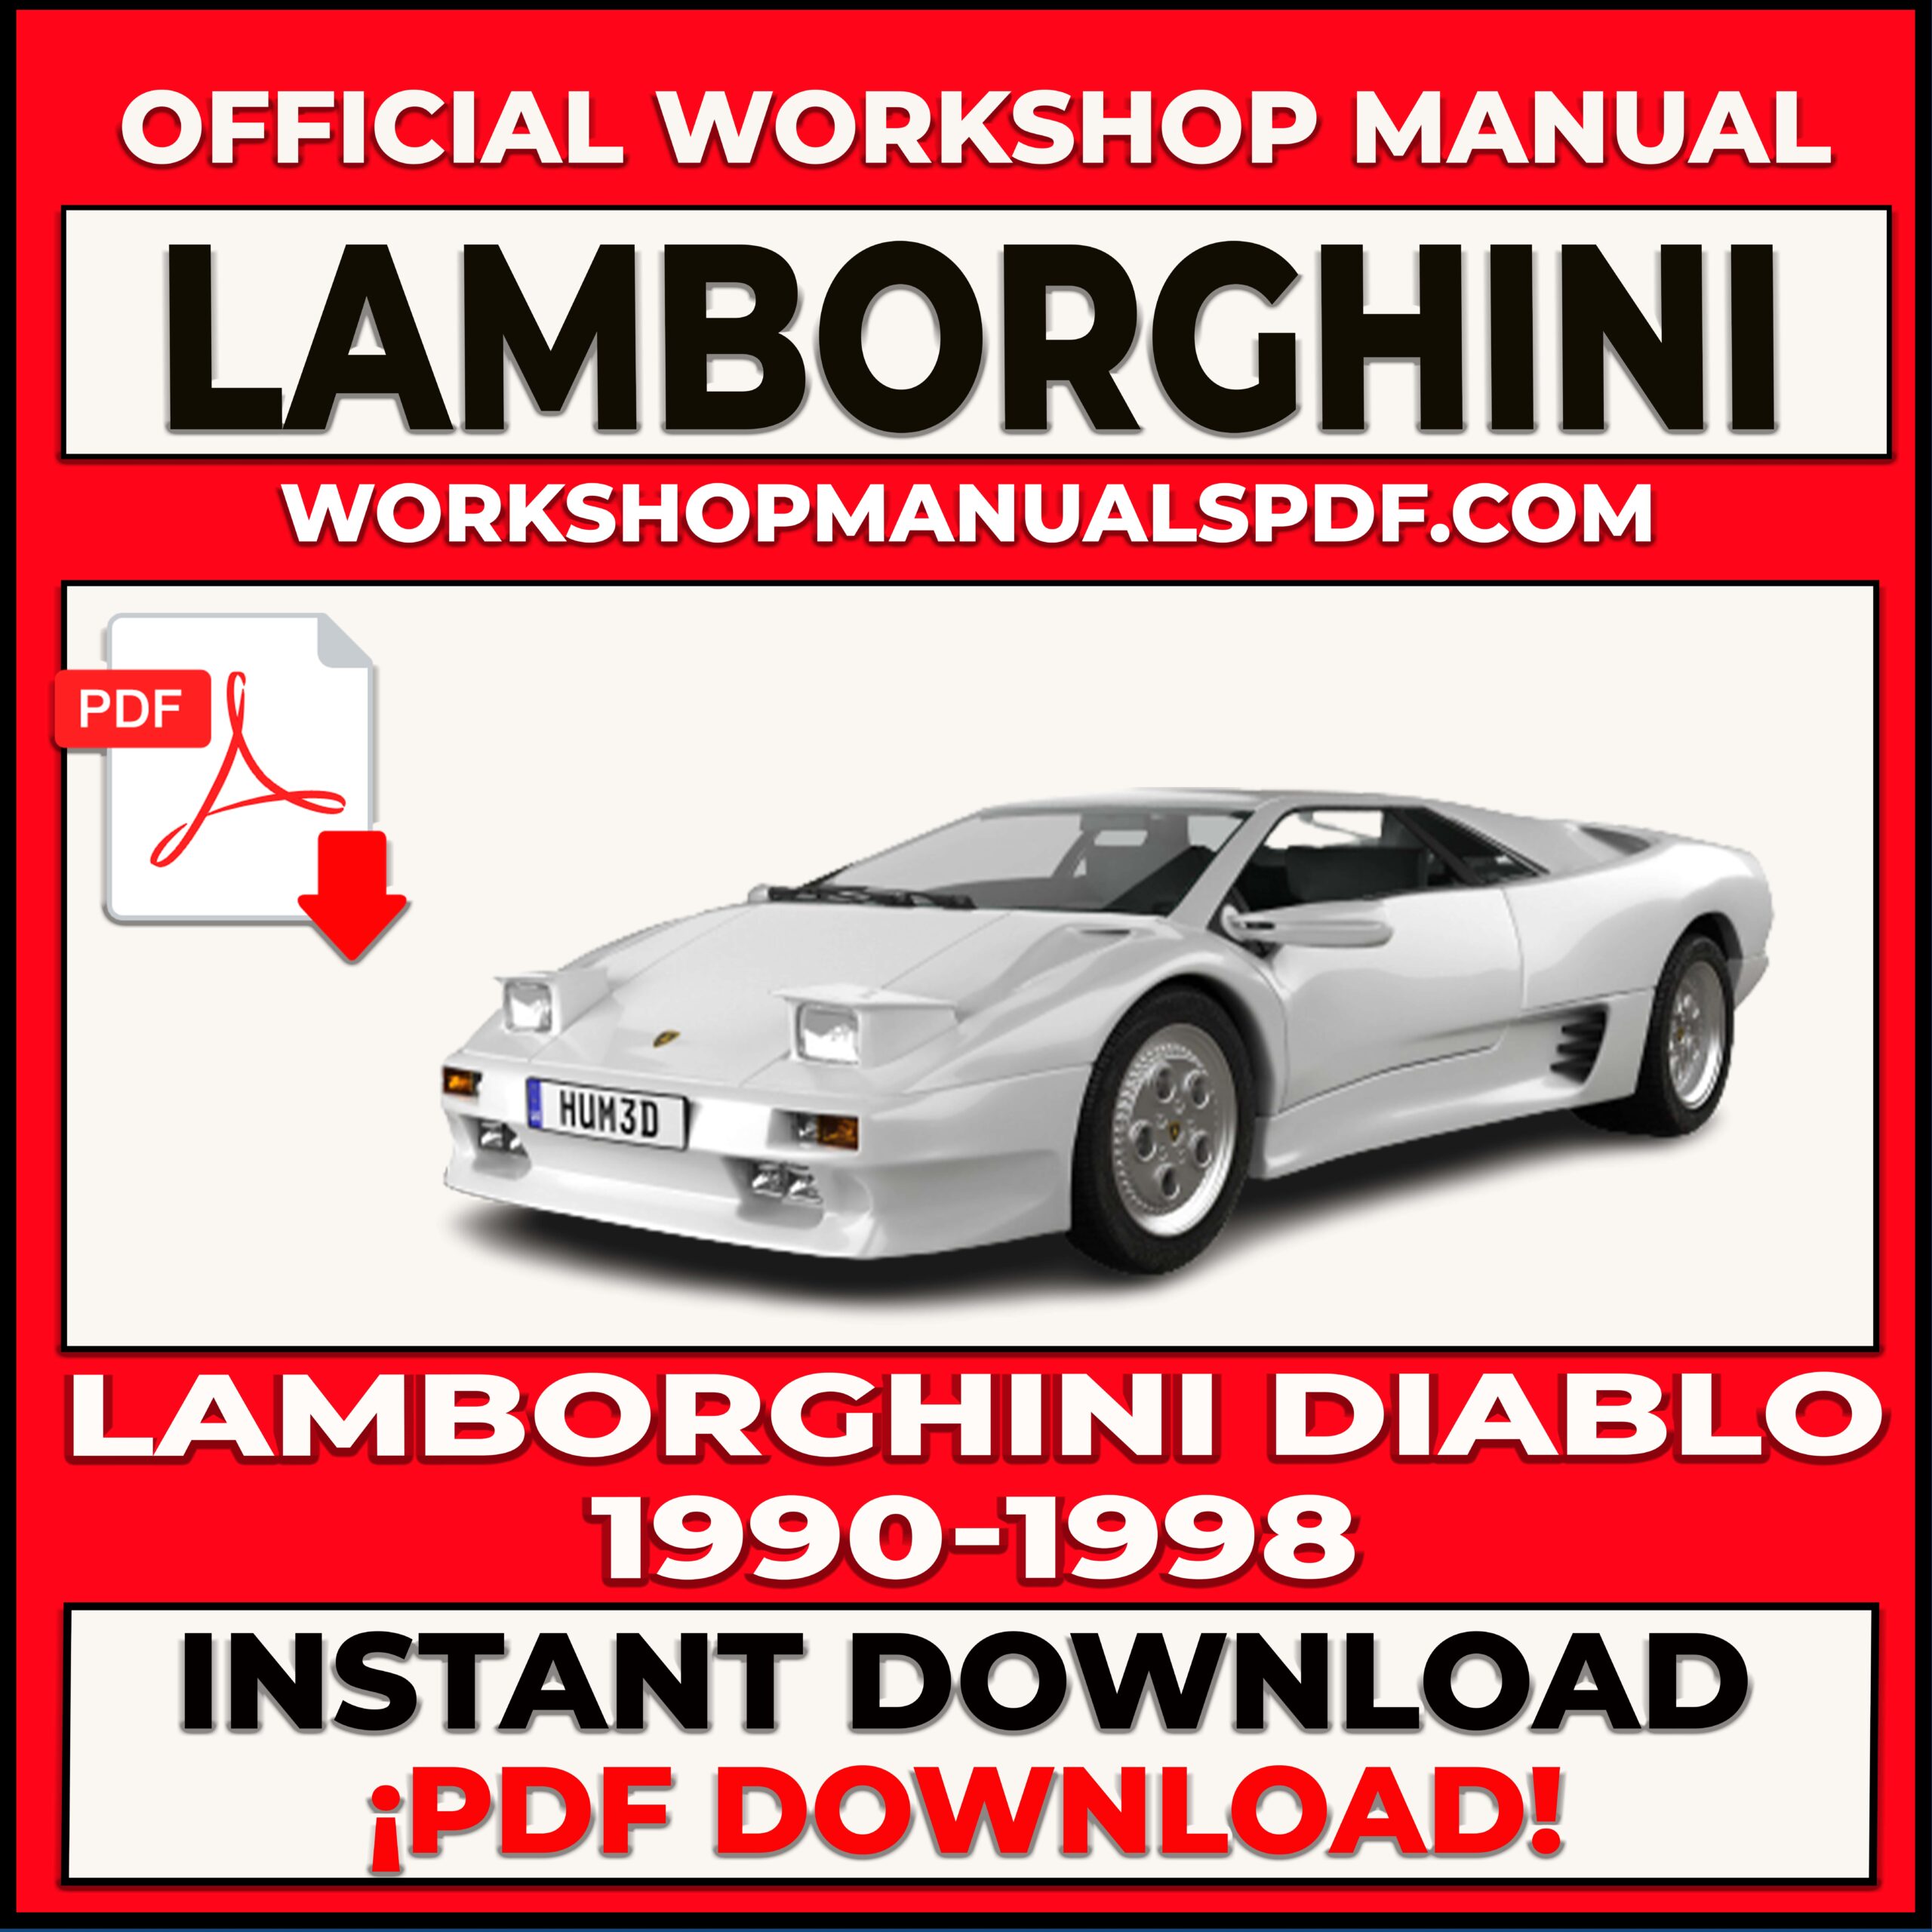 Lamborghini Diablo 1990-1998 Workshop Repair Manual